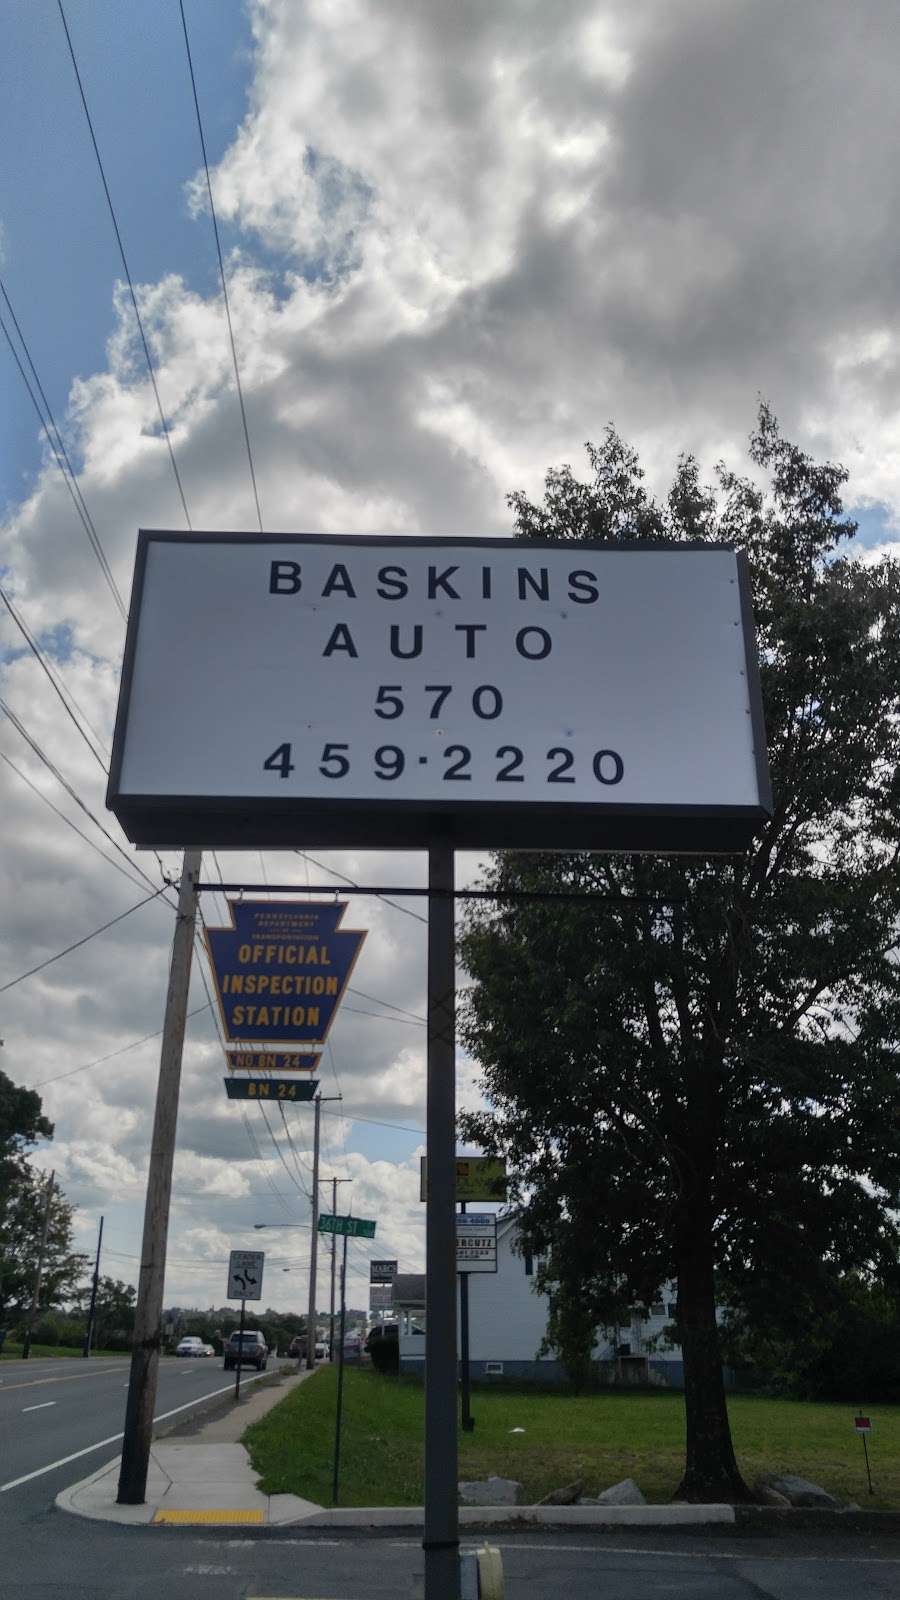 Baskins Garage INC | 1614 N Church St, Hazle Township, PA 18202, USA | Phone: (570) 459-2220